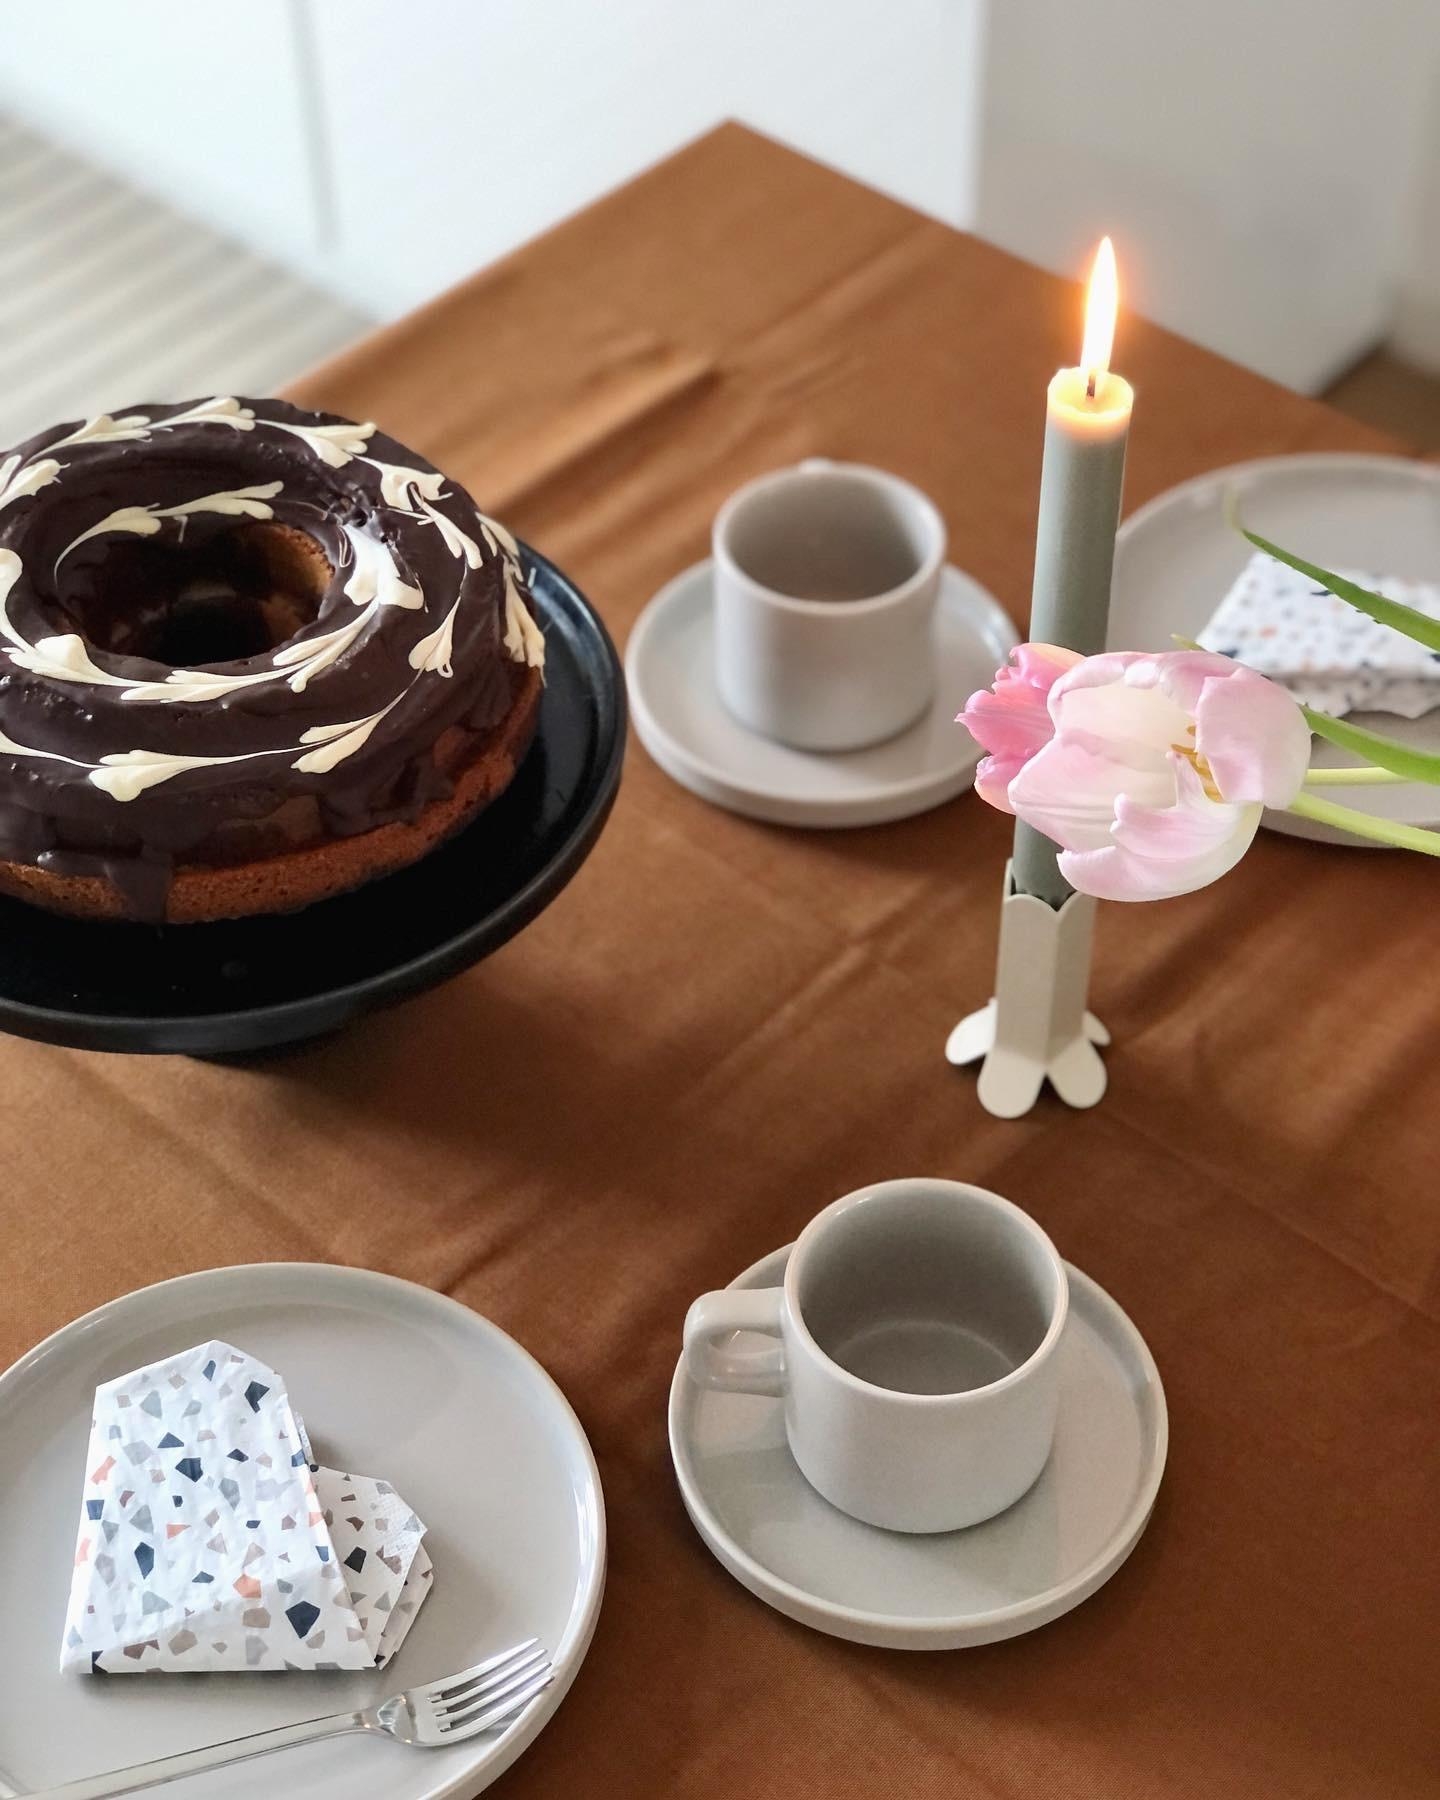 #valentinstag #tischdeko #tablesetting #dekoidee #deko #kuchen #cake #food #homedecor #skandinavisch #couchstyle